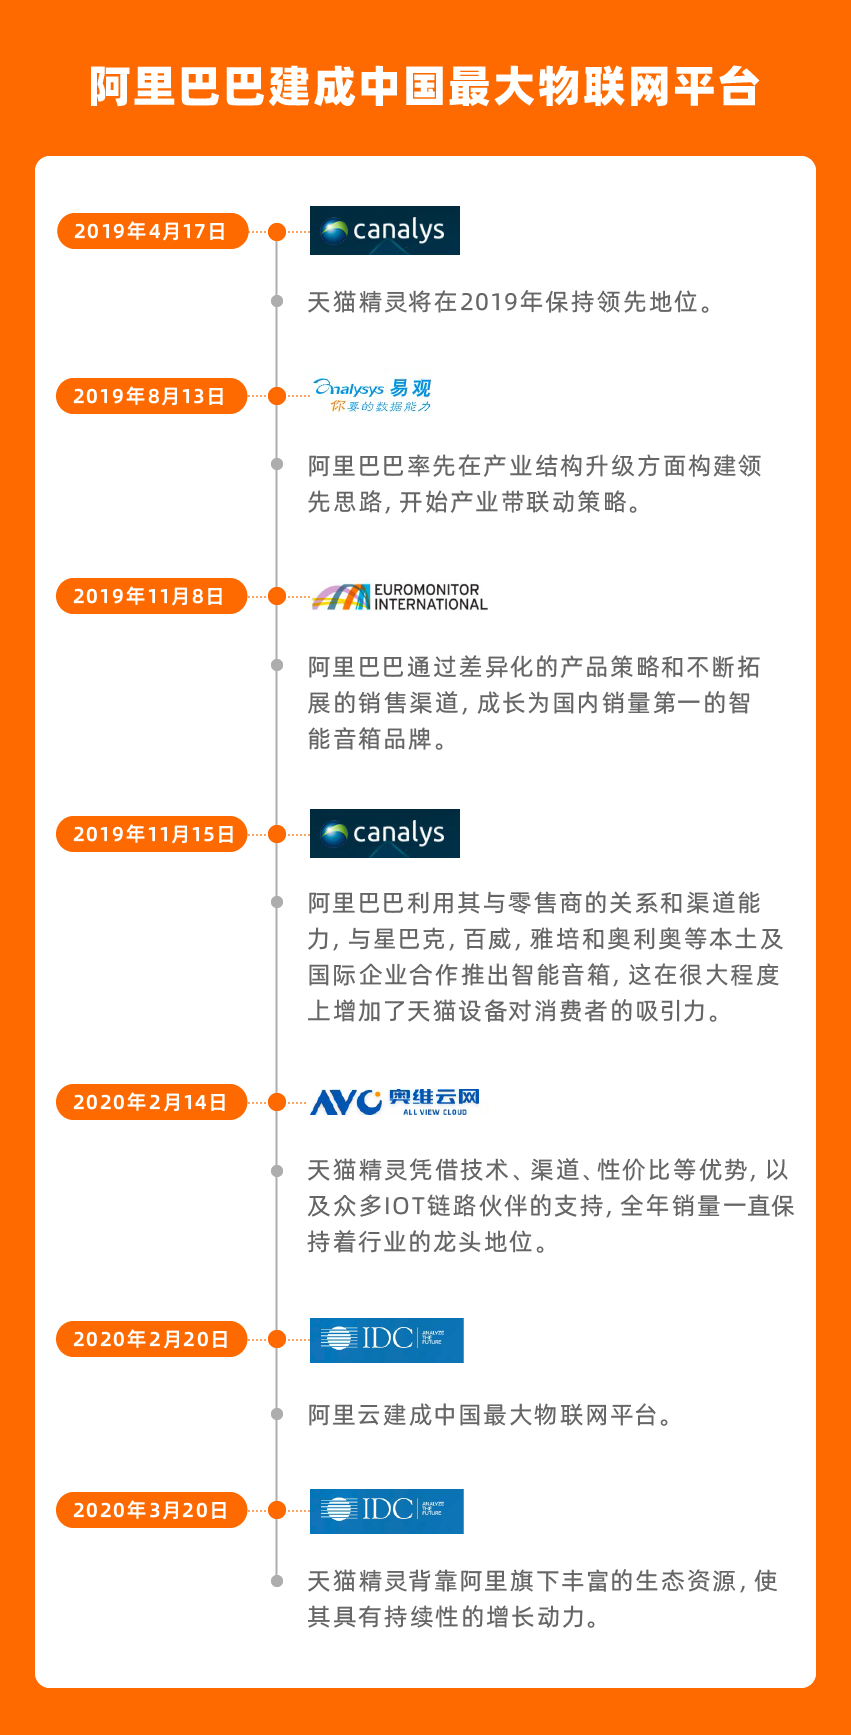 IDC报告显示天猫精灵稳居中国第一 阿里巴巴建成中国最大物联网平台